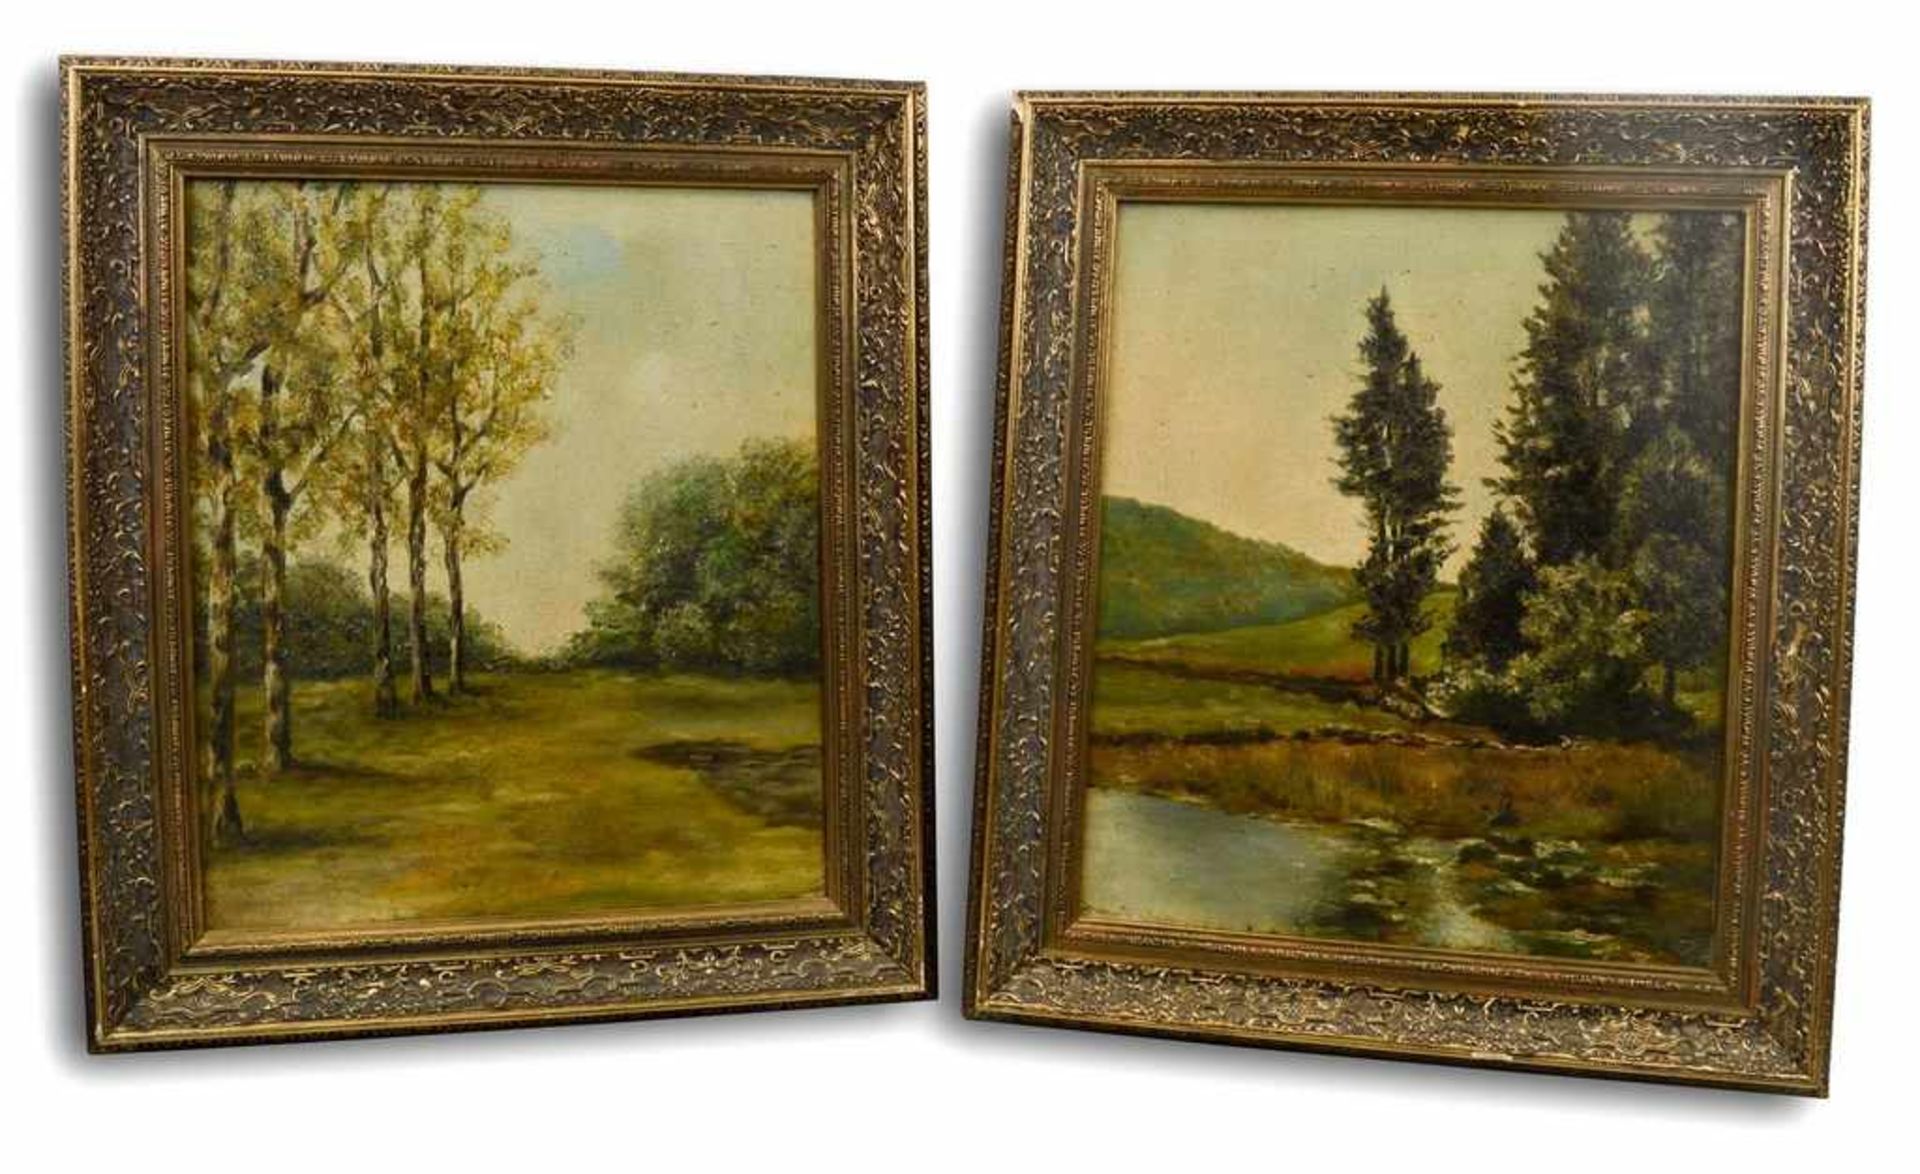 Unbekannter MalerAnfang 20. Jh., paar Gemälde, Bäume am Seeufer, Öl/Lwd., 32 X 38 cm, Rahmen